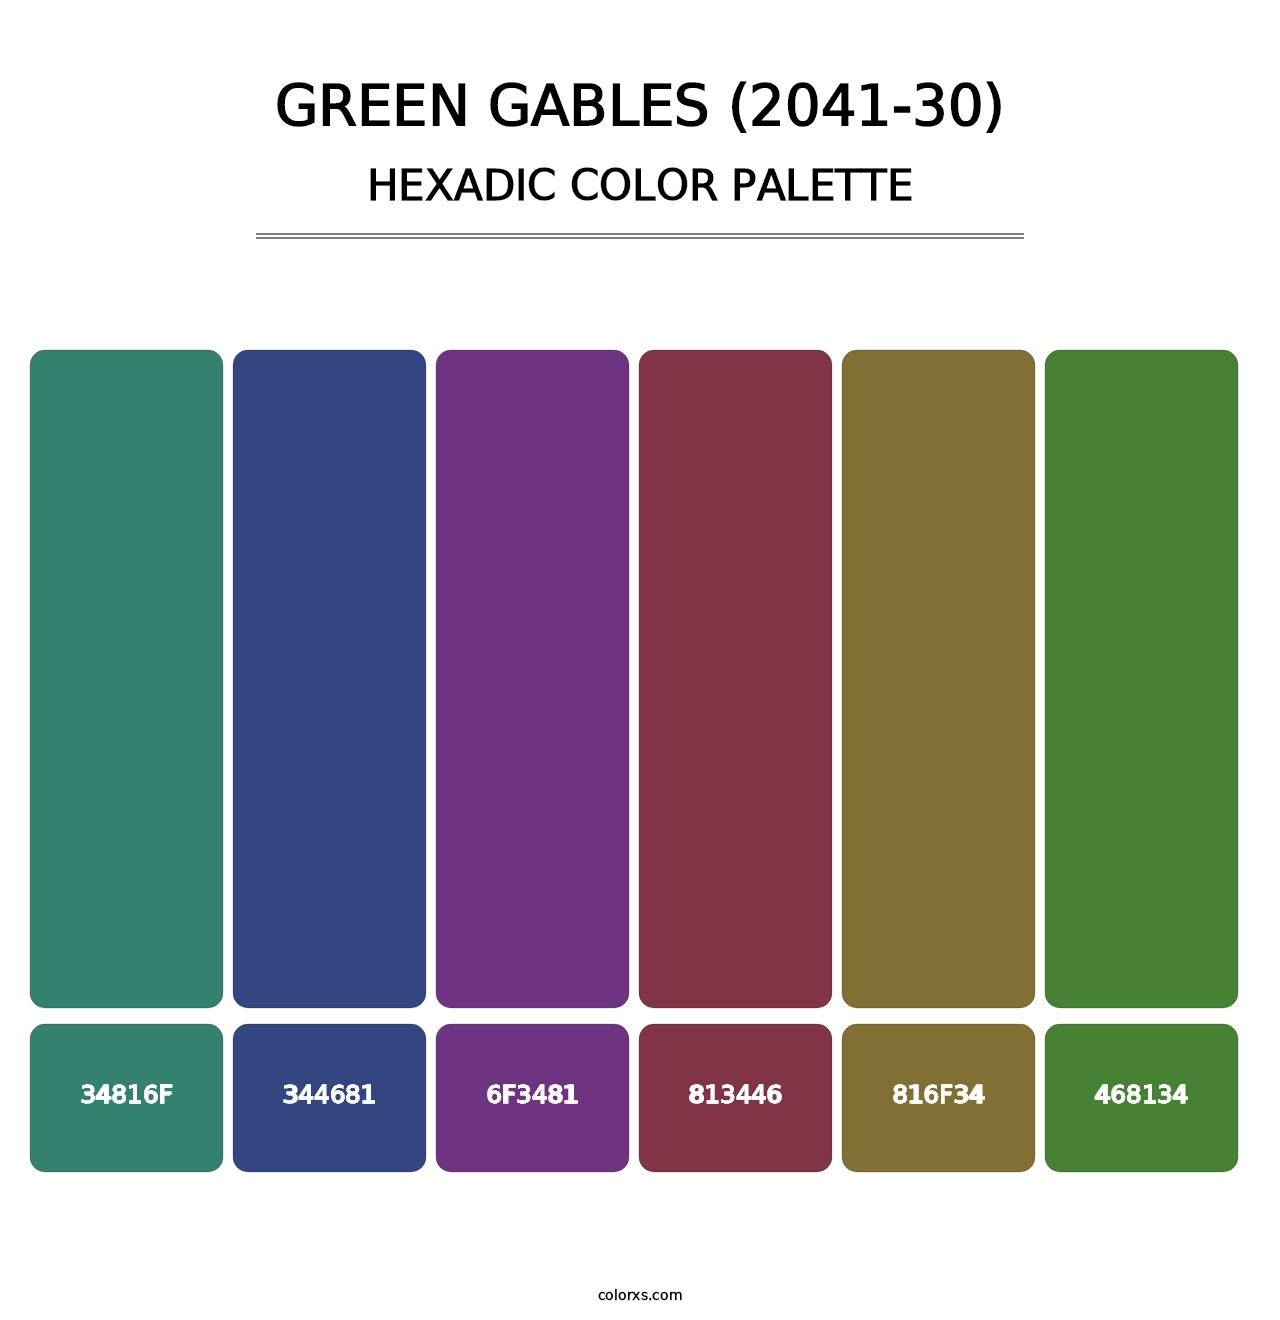 Green Gables (2041-30) - Hexadic Color Palette